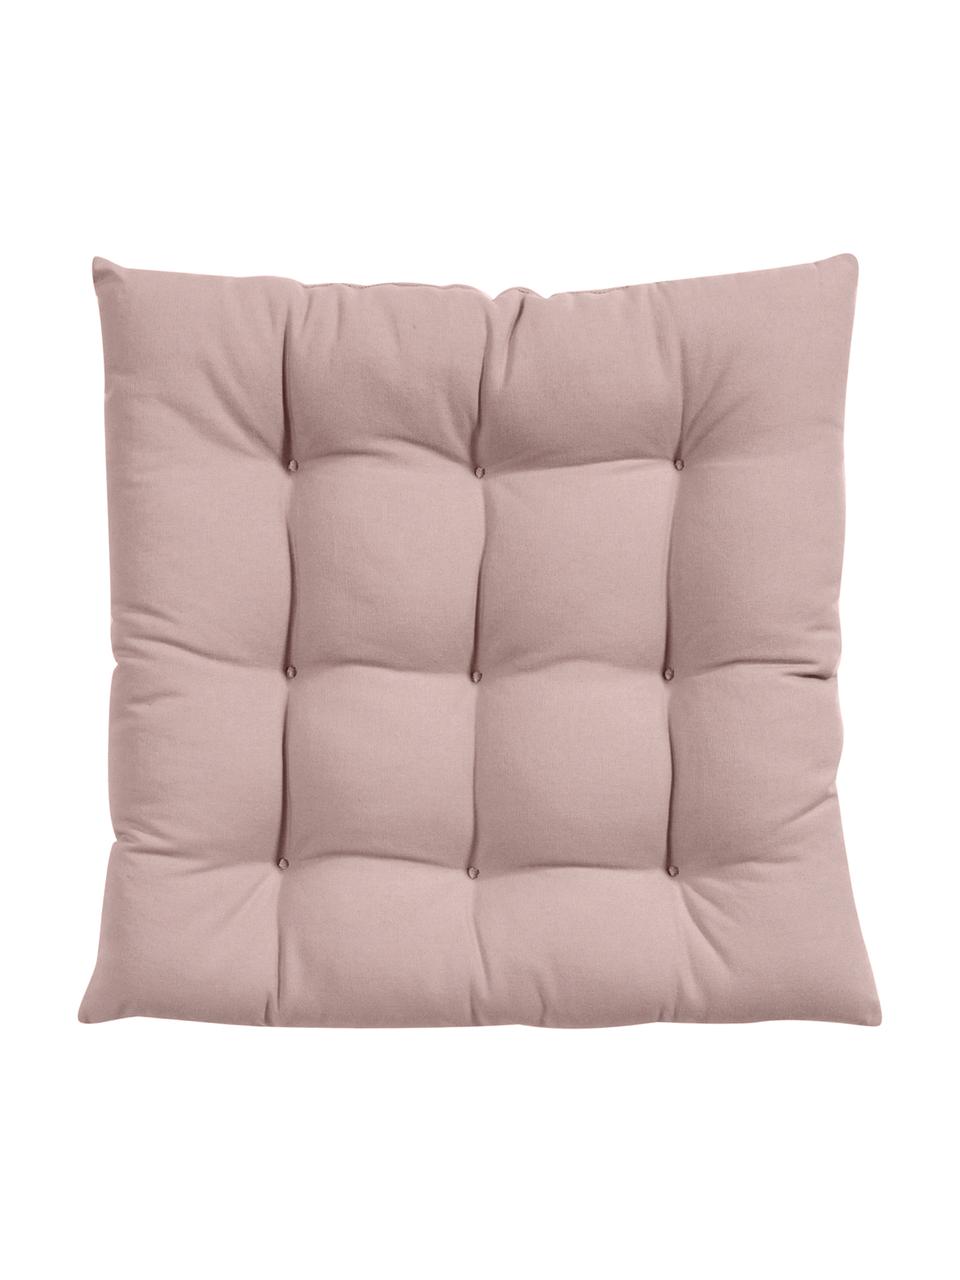 Cuscino sedia in cotone rosa Ava, Rivestimento: 100% cotone, Rosa, Larg. 40 x Lung. 40 cm